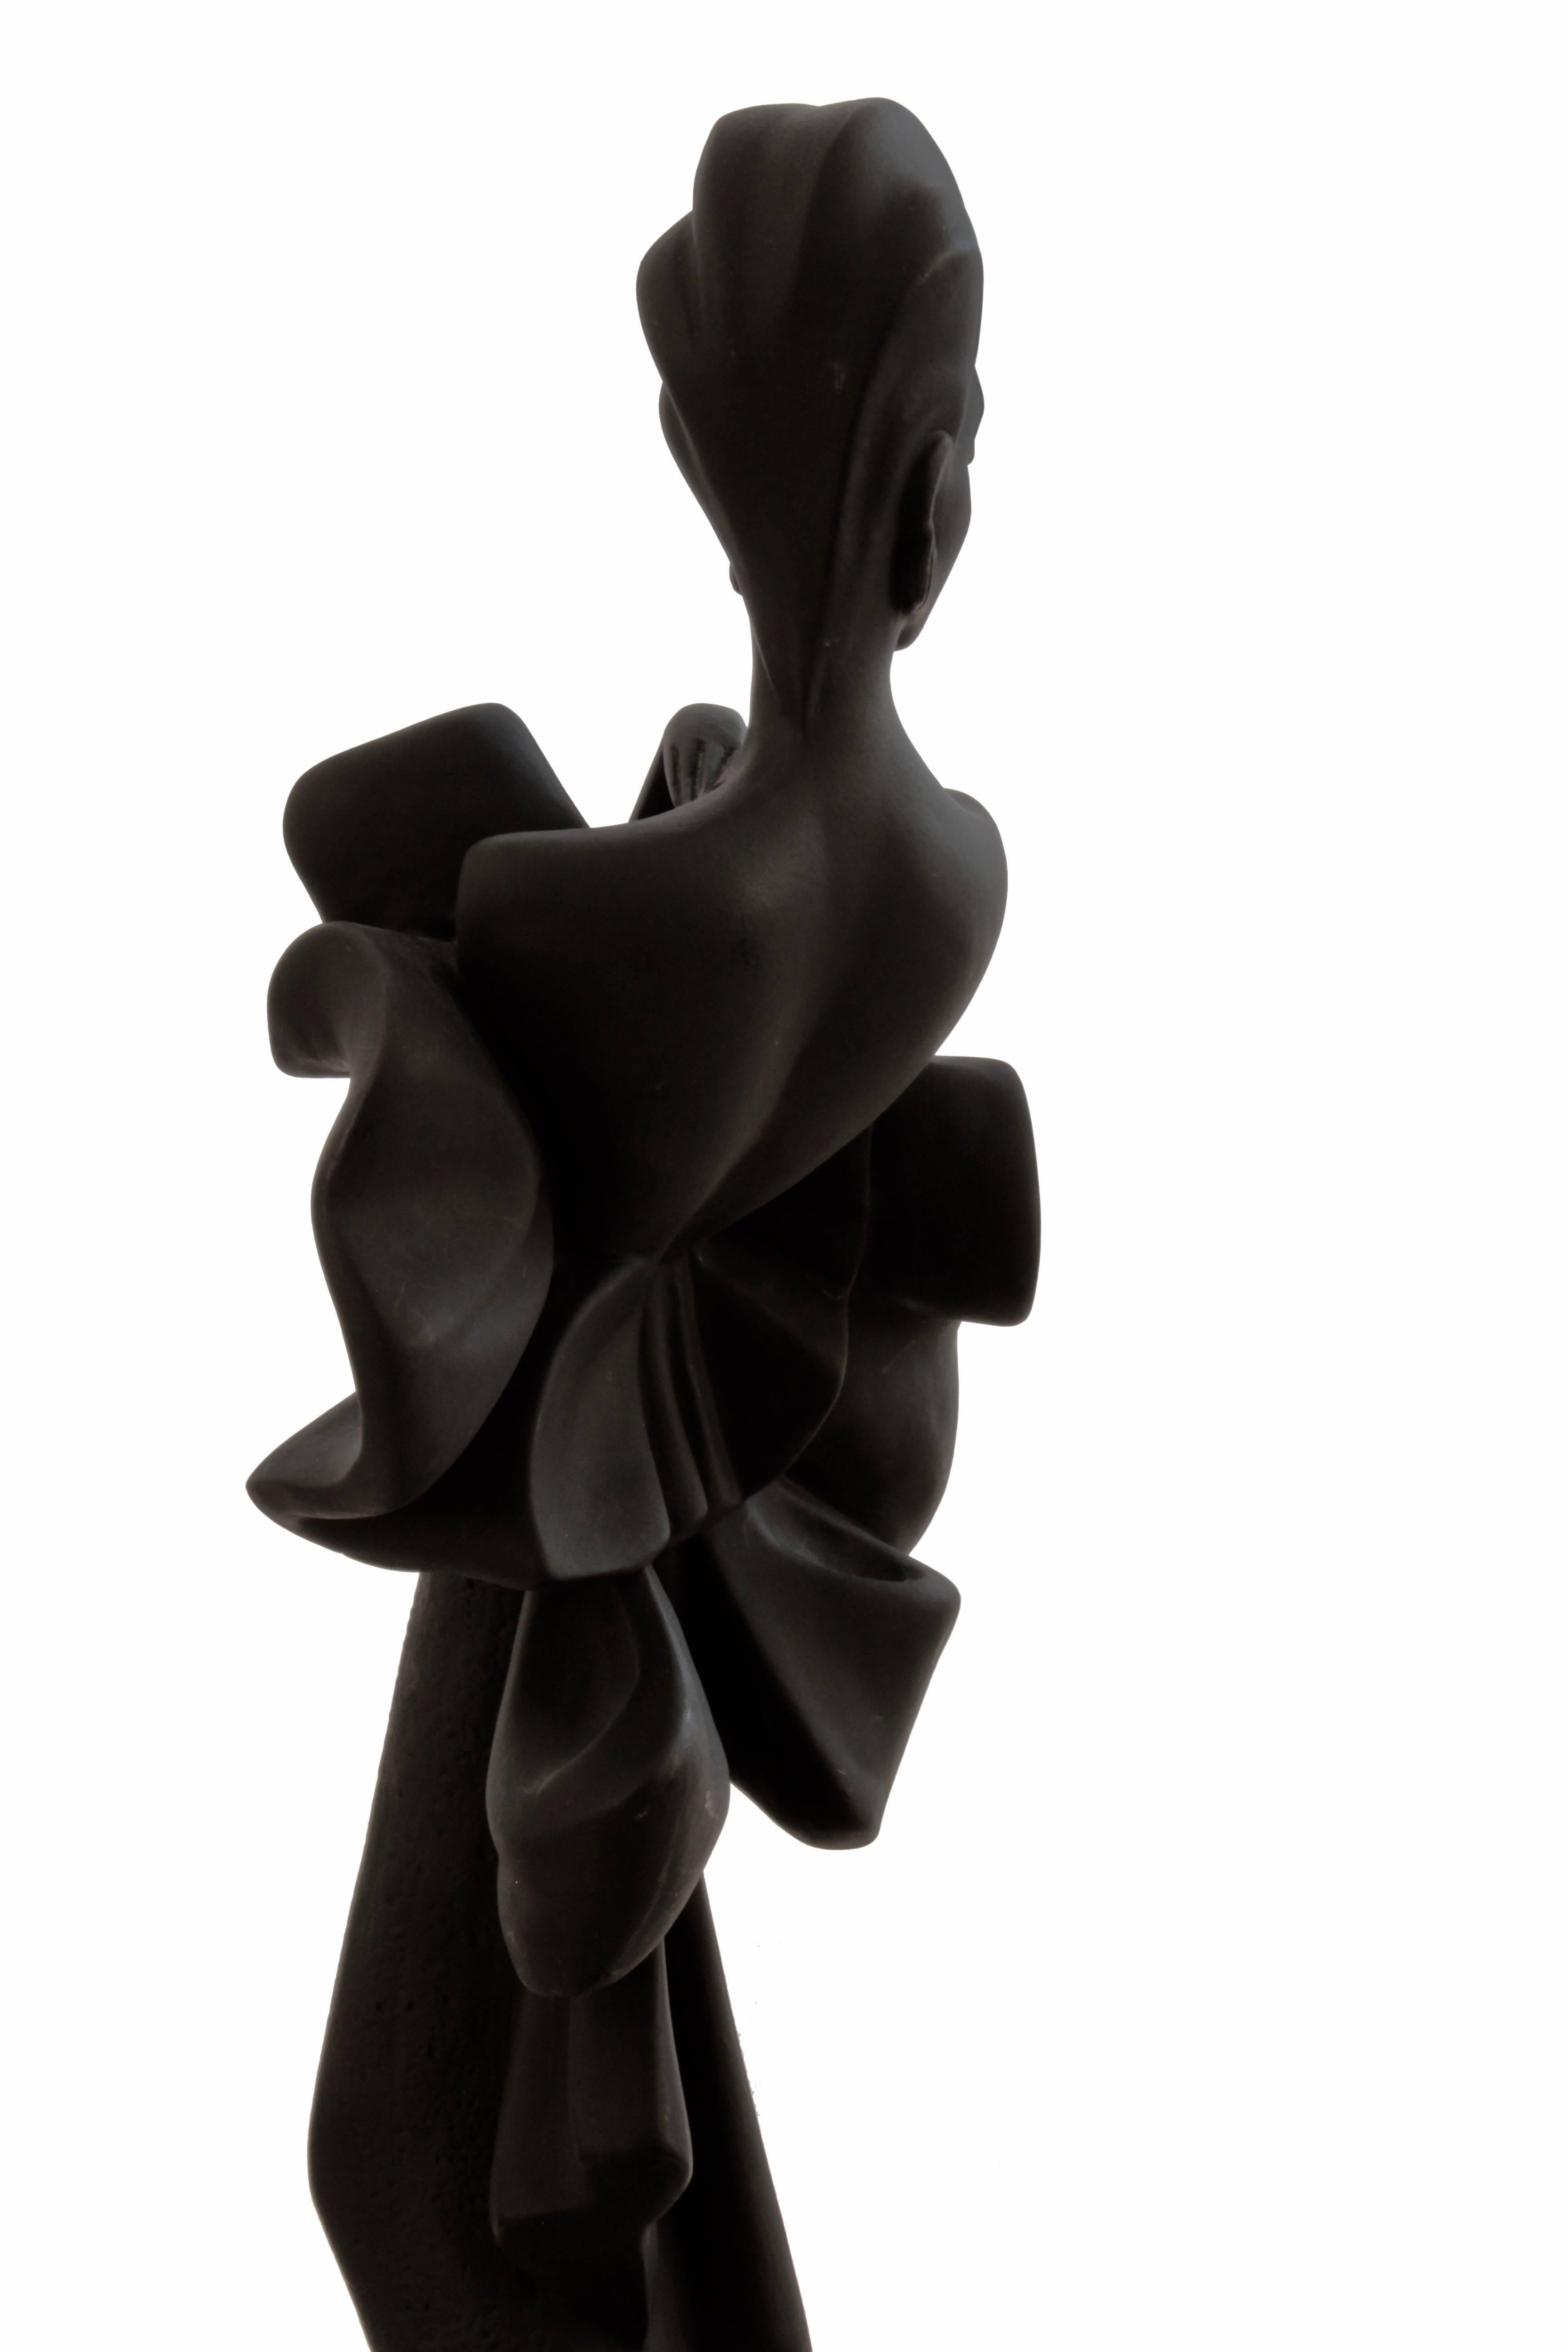 Alexsander Danel Austin Productions Inc Orchide Sculpture AP3590 Fashionista 90s 2